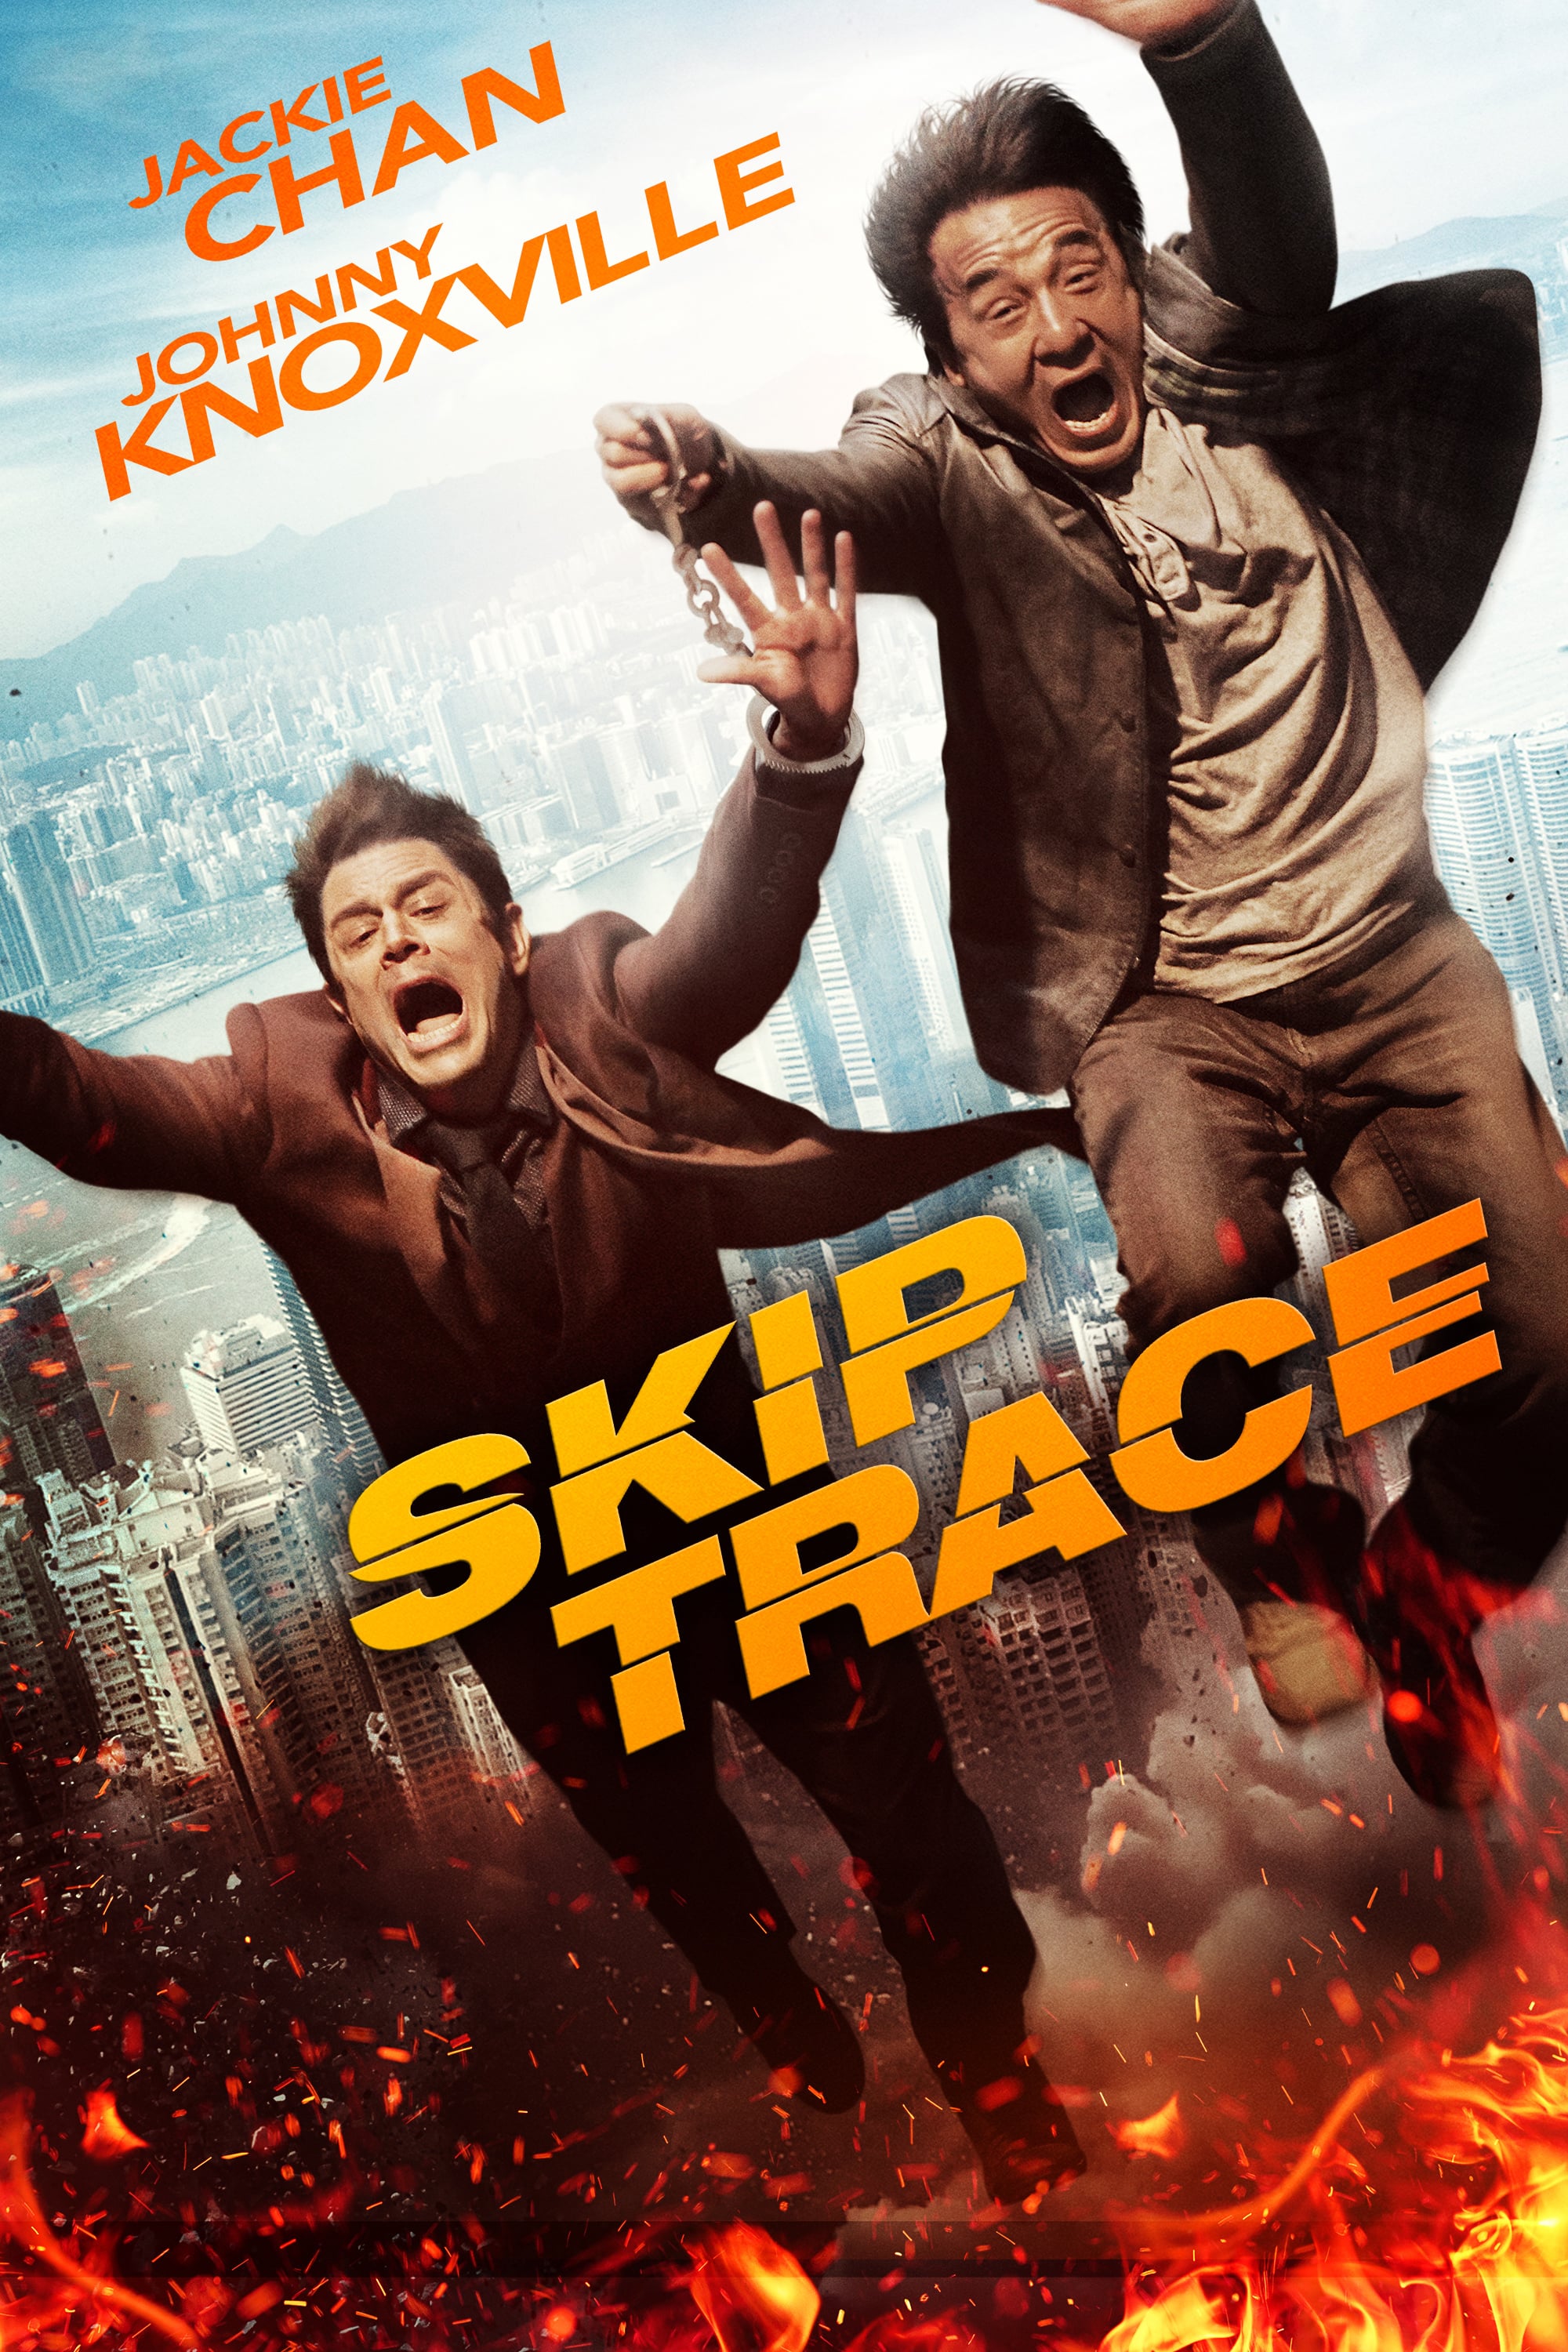 Plakat von "Skiptrace"